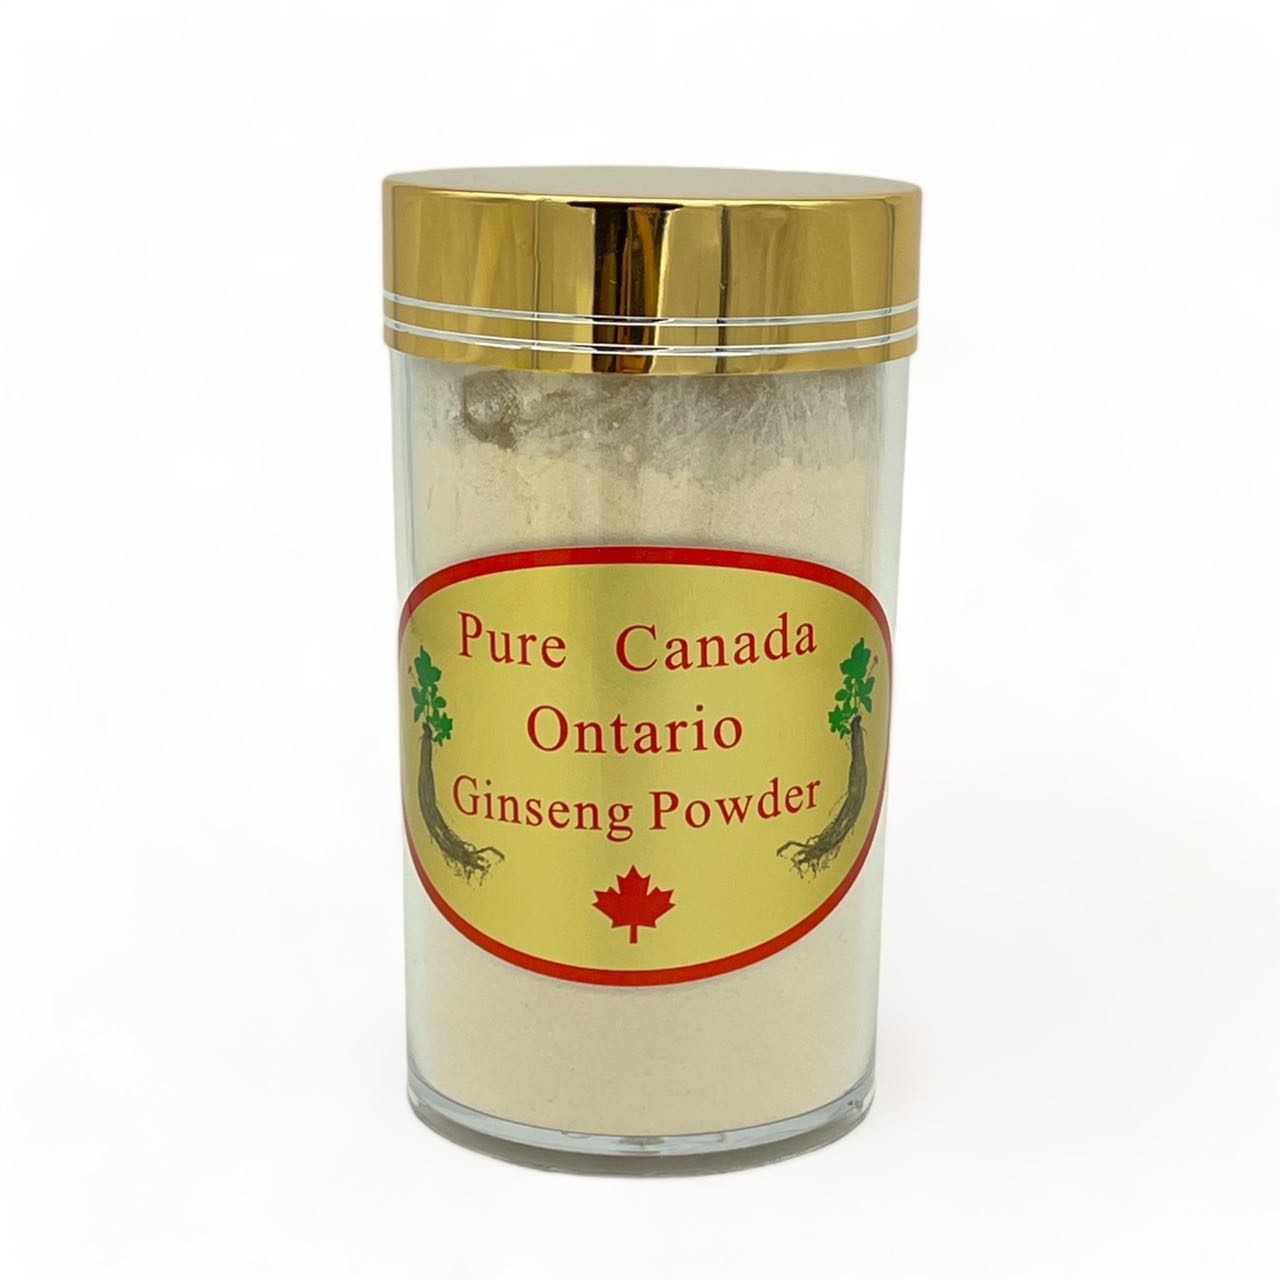 "NATIVE ULTRA" Poudre de Ginseng Américain Canadien 100% Pure de Qualité Supérieure